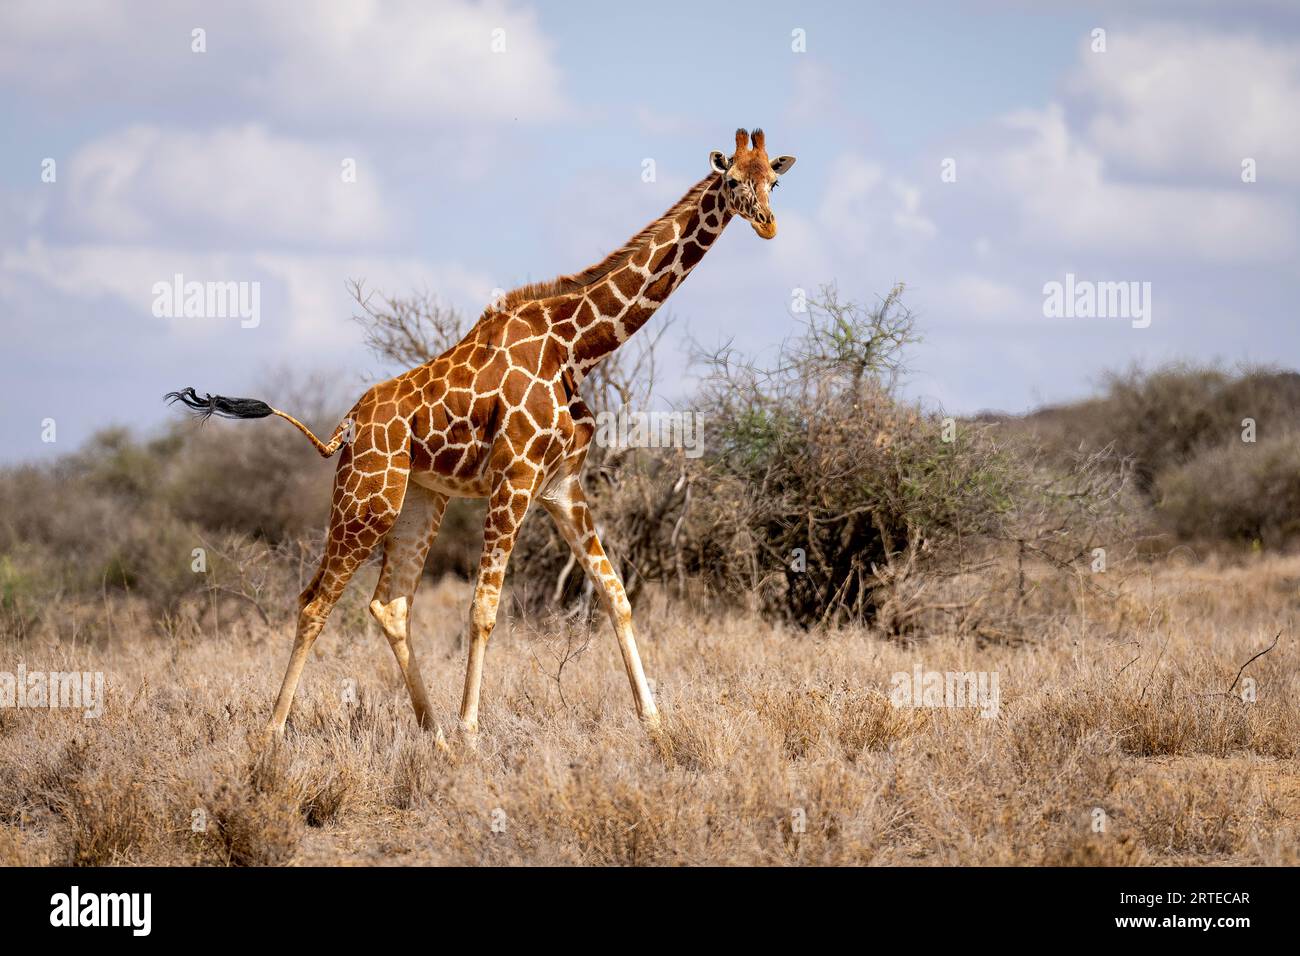 Portrait d'une girafe réticulée (Giraffa reticulata) marchant devant des buissons sur la savane, regardant la caméra ; Laikipia, Kenya Banque D'Images